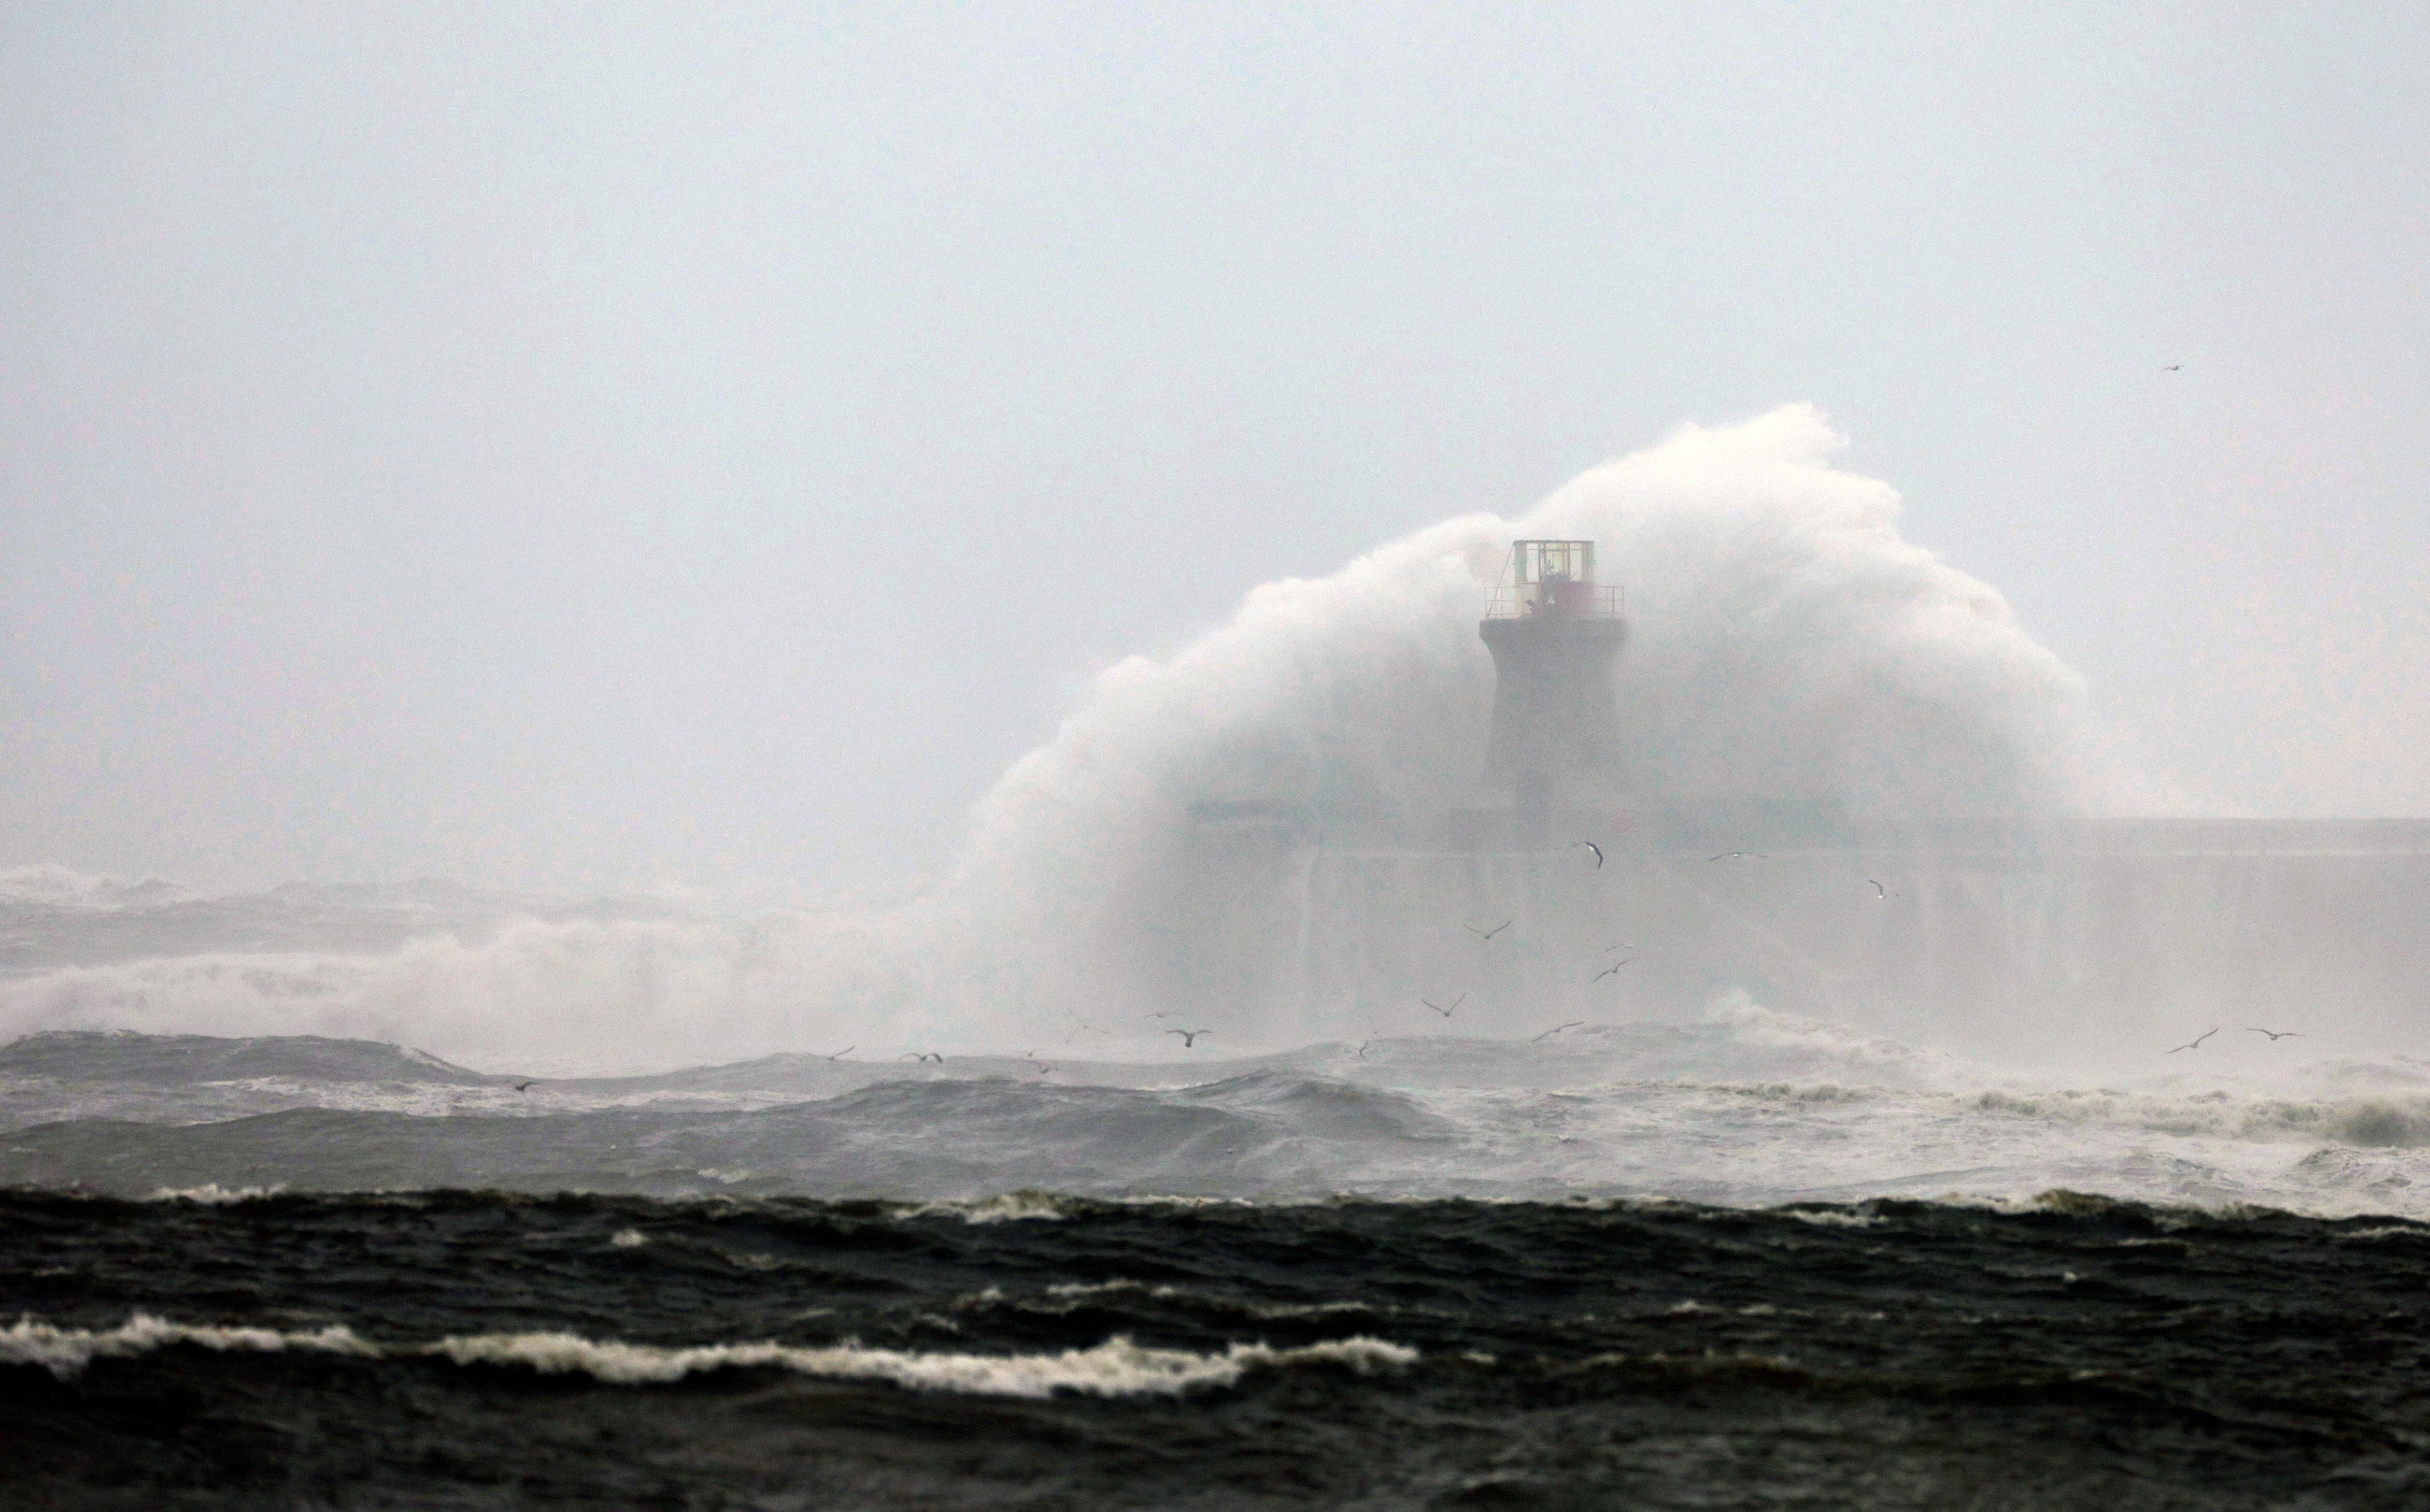 Las olas chocan contra el faro de South Shields tras los daños sufridos por la cúpula durante la tormenta Babet en Seaham, Gran Bretaña (REUTERS/Lee Smith)